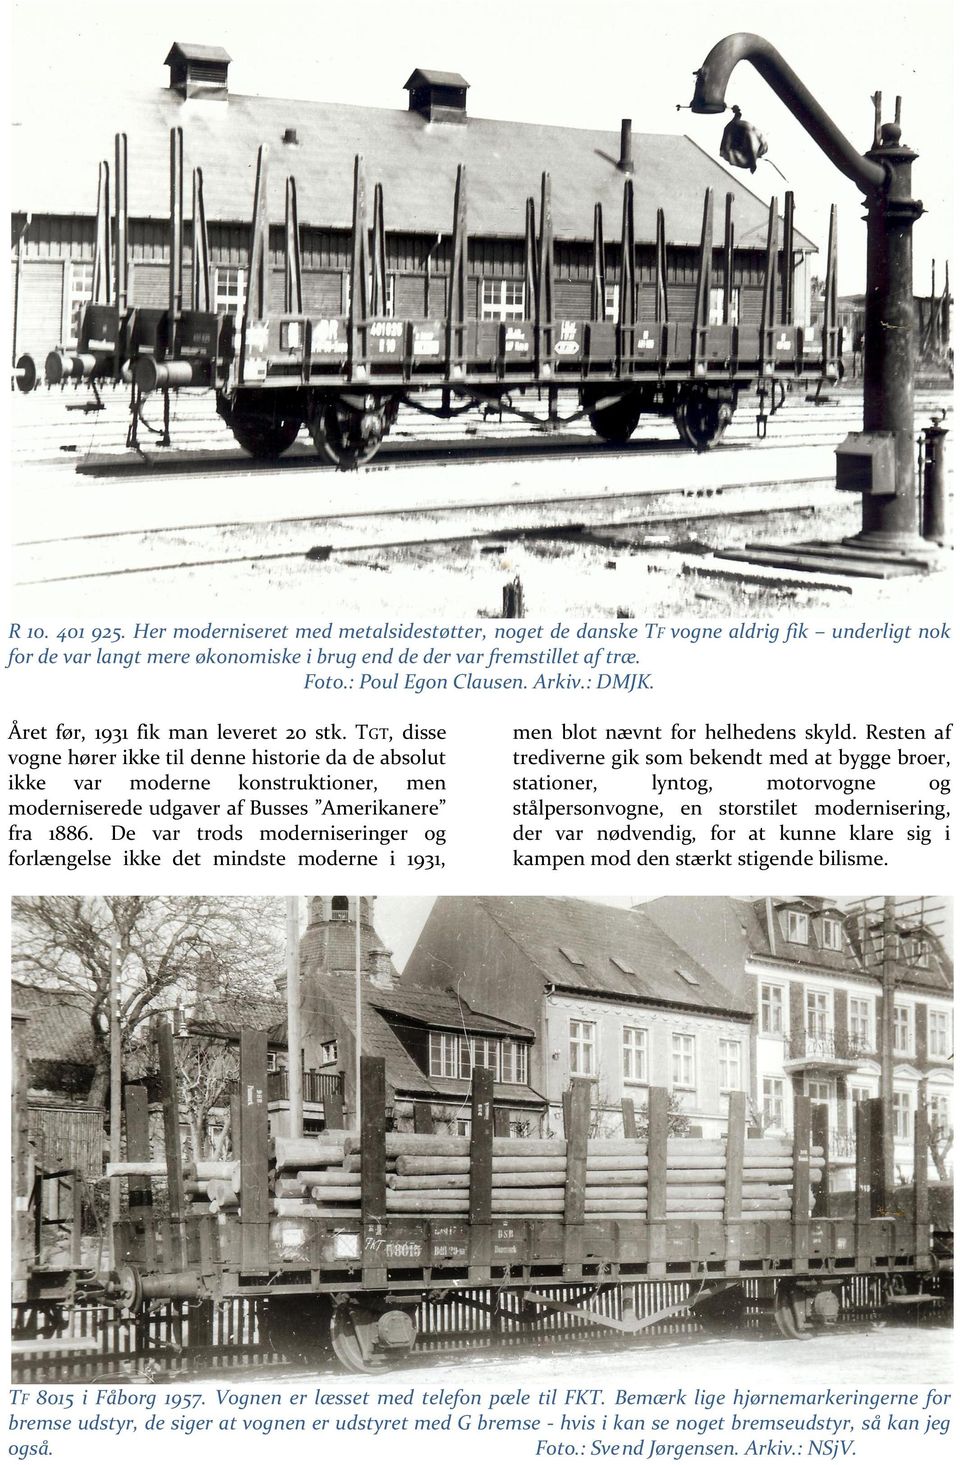 TGT, disse vogne hører ikke til denne historie da de absolut ikke var moderne konstruktioner, men moderniserede udgaver af Busses Amerikanere fra 1886.